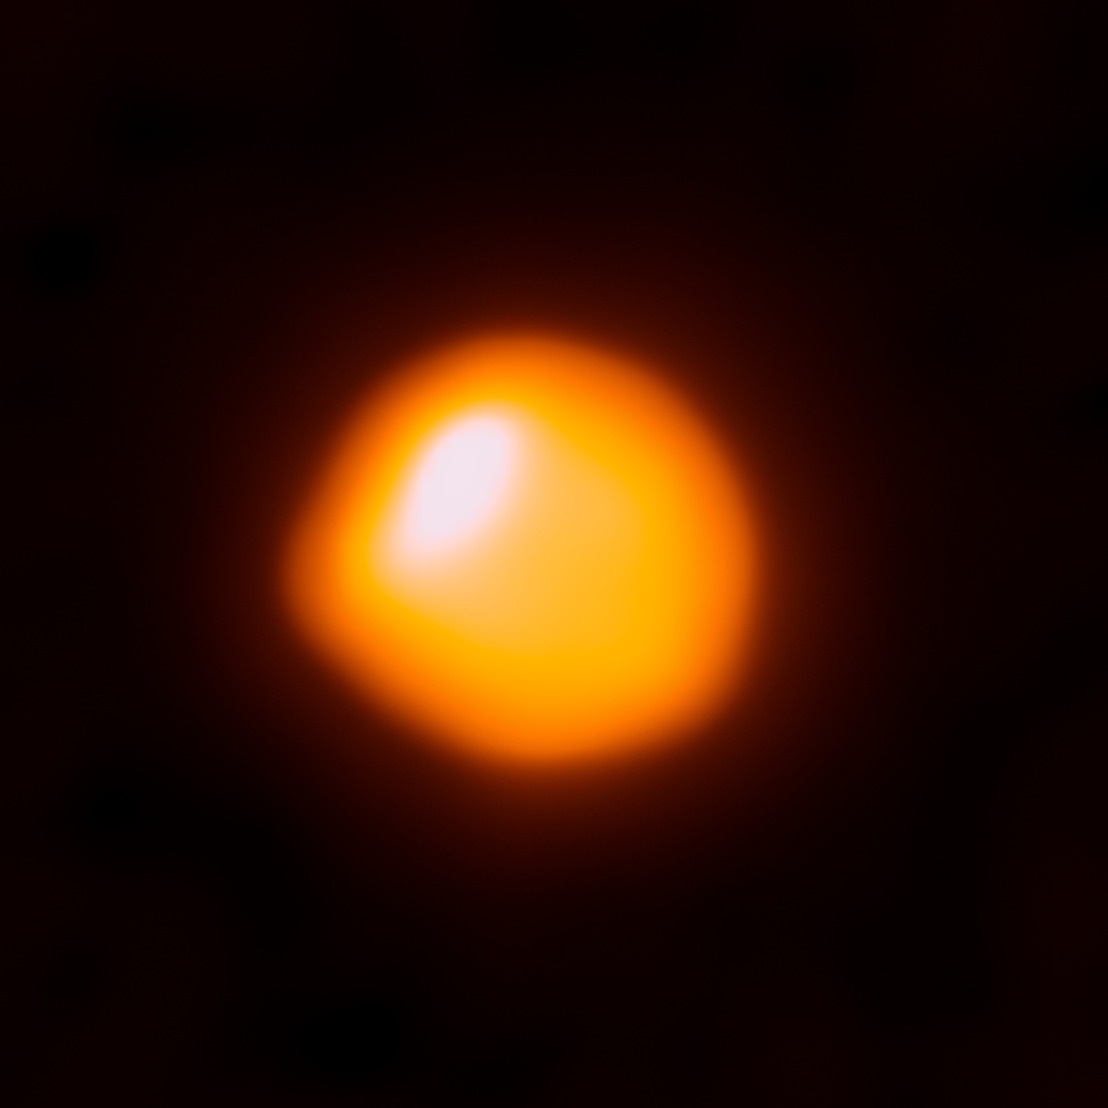 Betelgeuse yra maždaug 50% šviesesnė nei įprasta.  Kas vyksta?